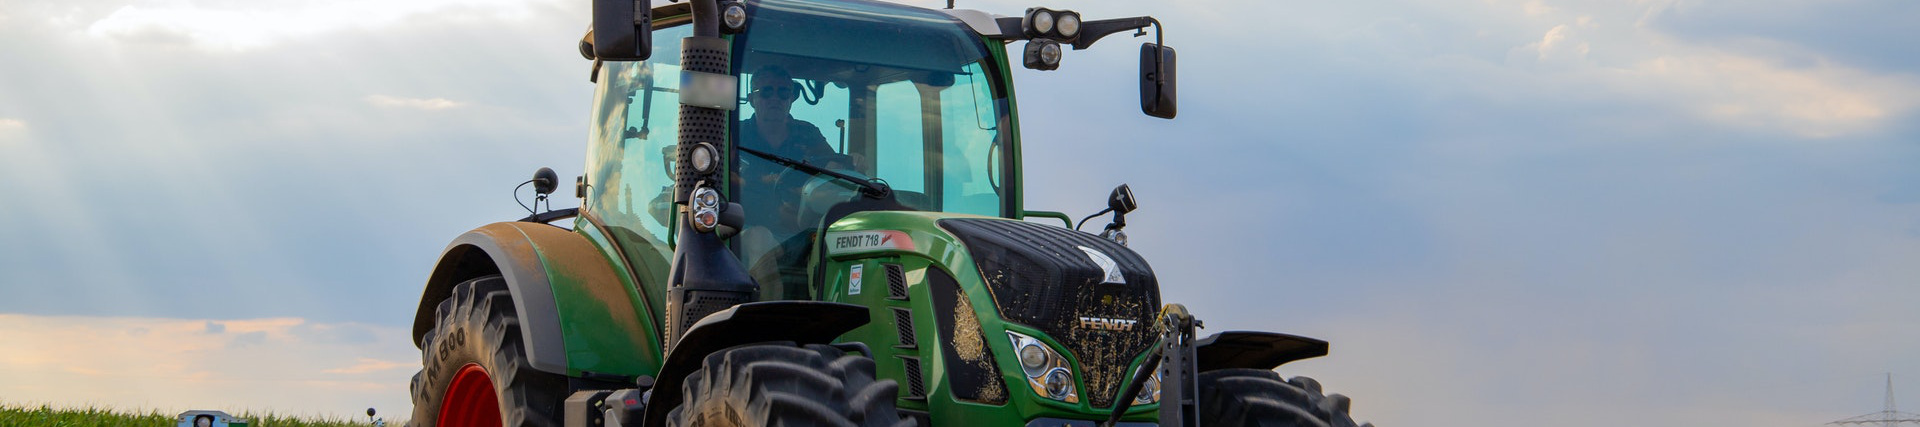 Banner de la certificación de Tractor agrícola - 